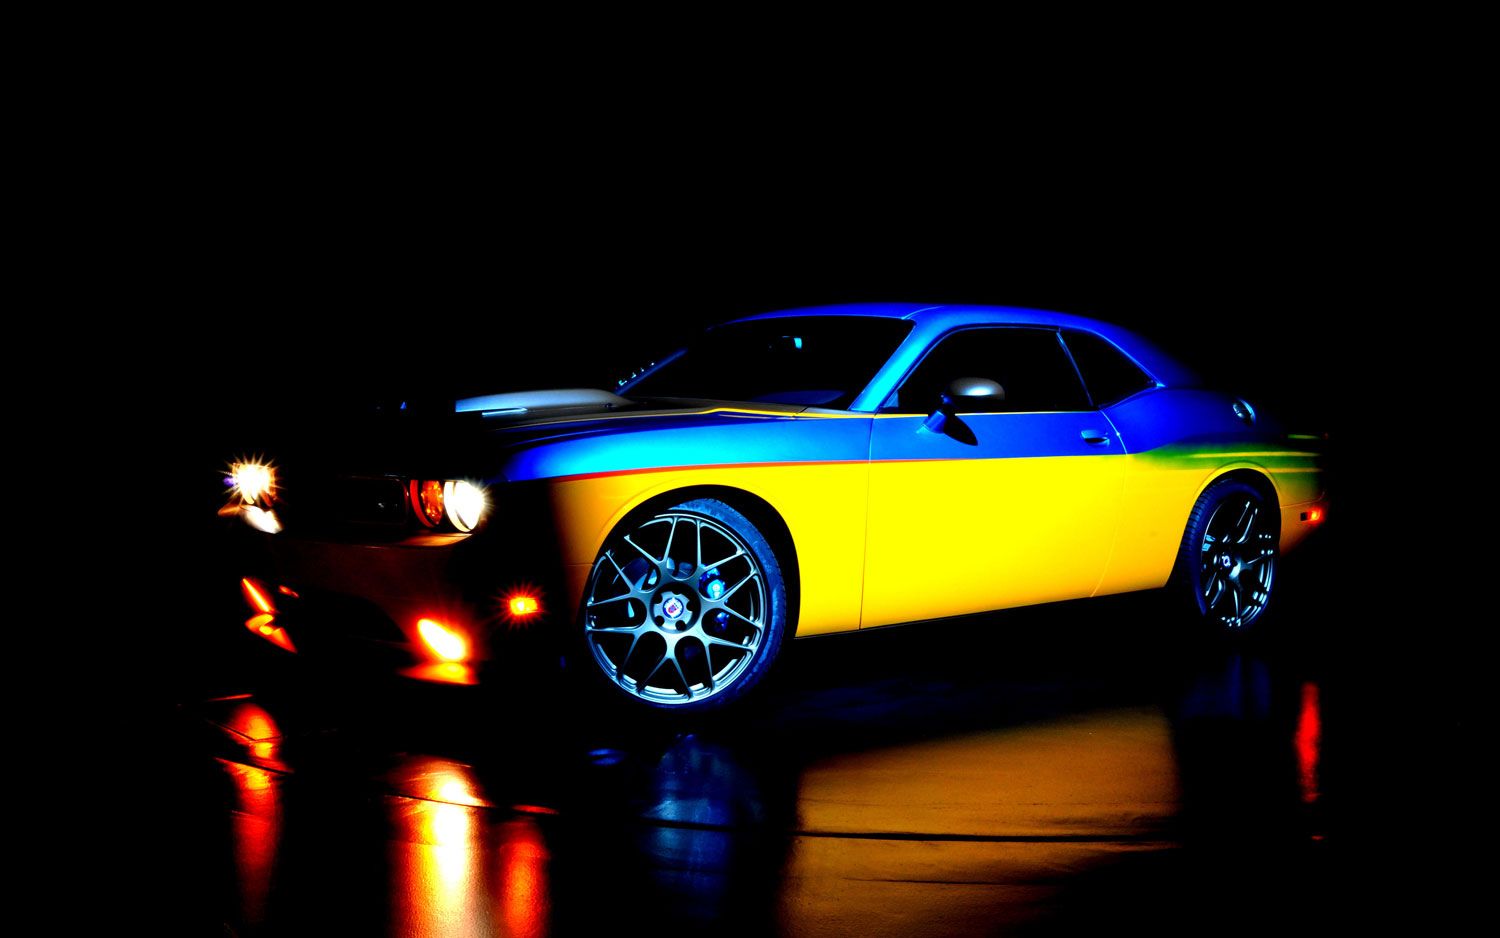 2013 Dodge Challenger SRT8 by Tim McGraw